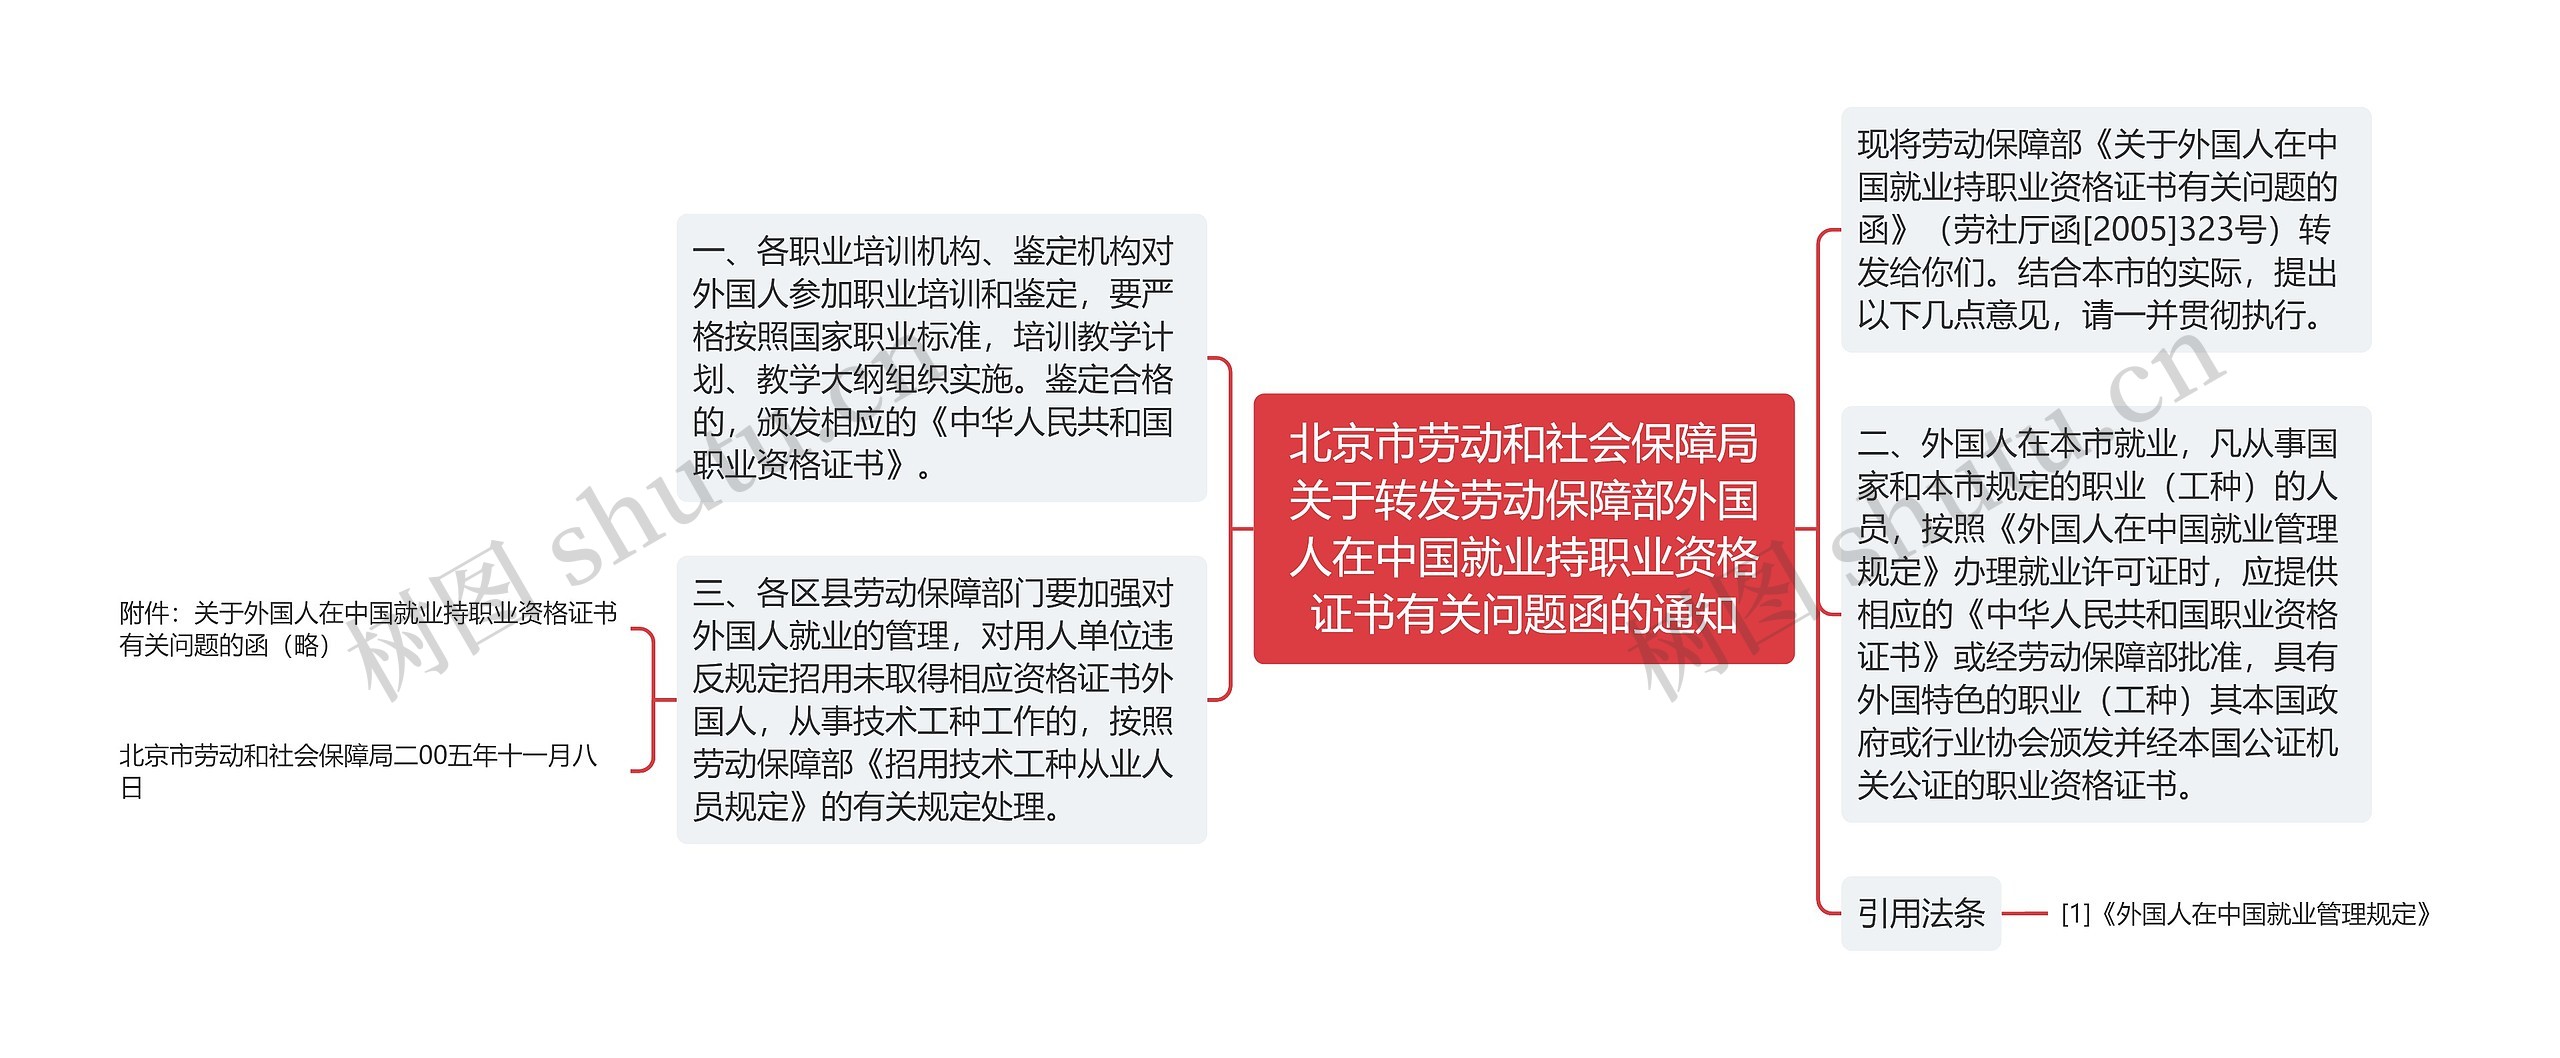 北京市劳动和社会保障局关于转发劳动保障部外国人在中国就业持职业资格证书有关问题函的通知